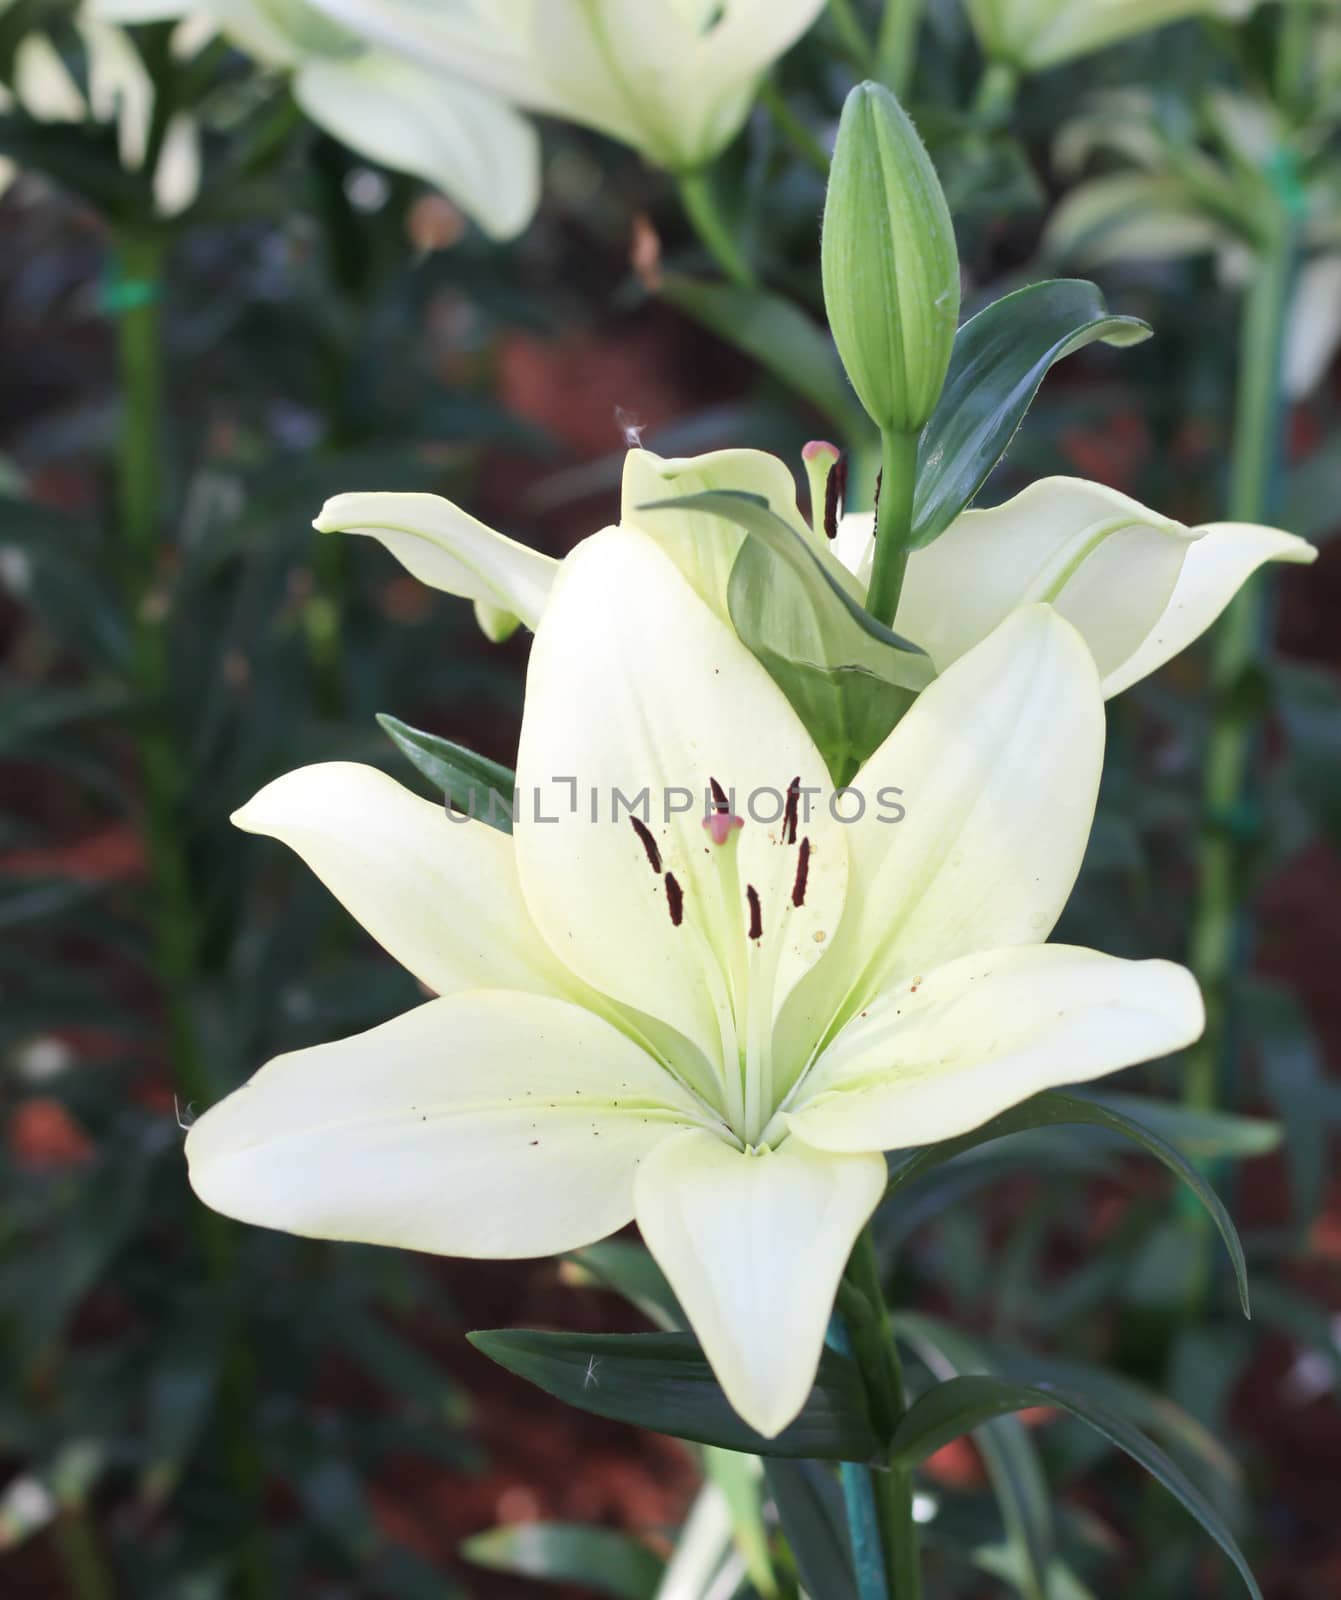 White Lilies flower by primzrider